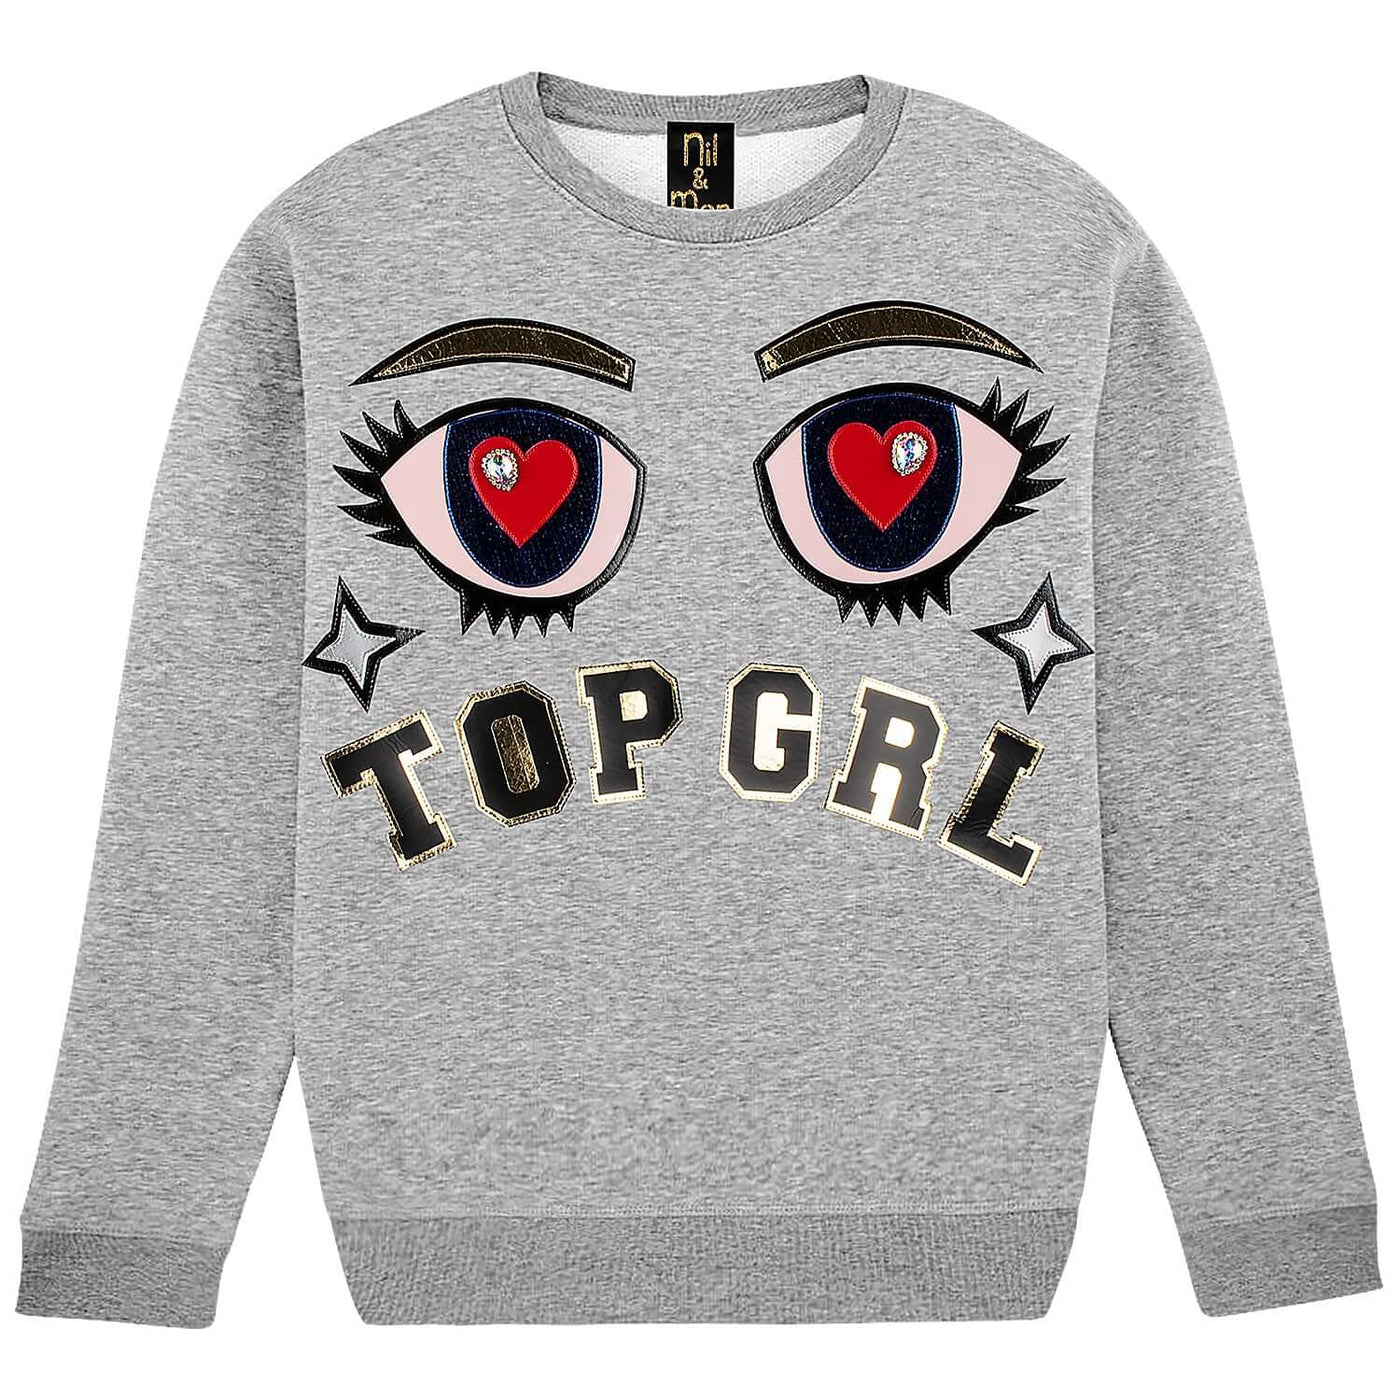 Sweatshirt "Top GRL" - heather grey